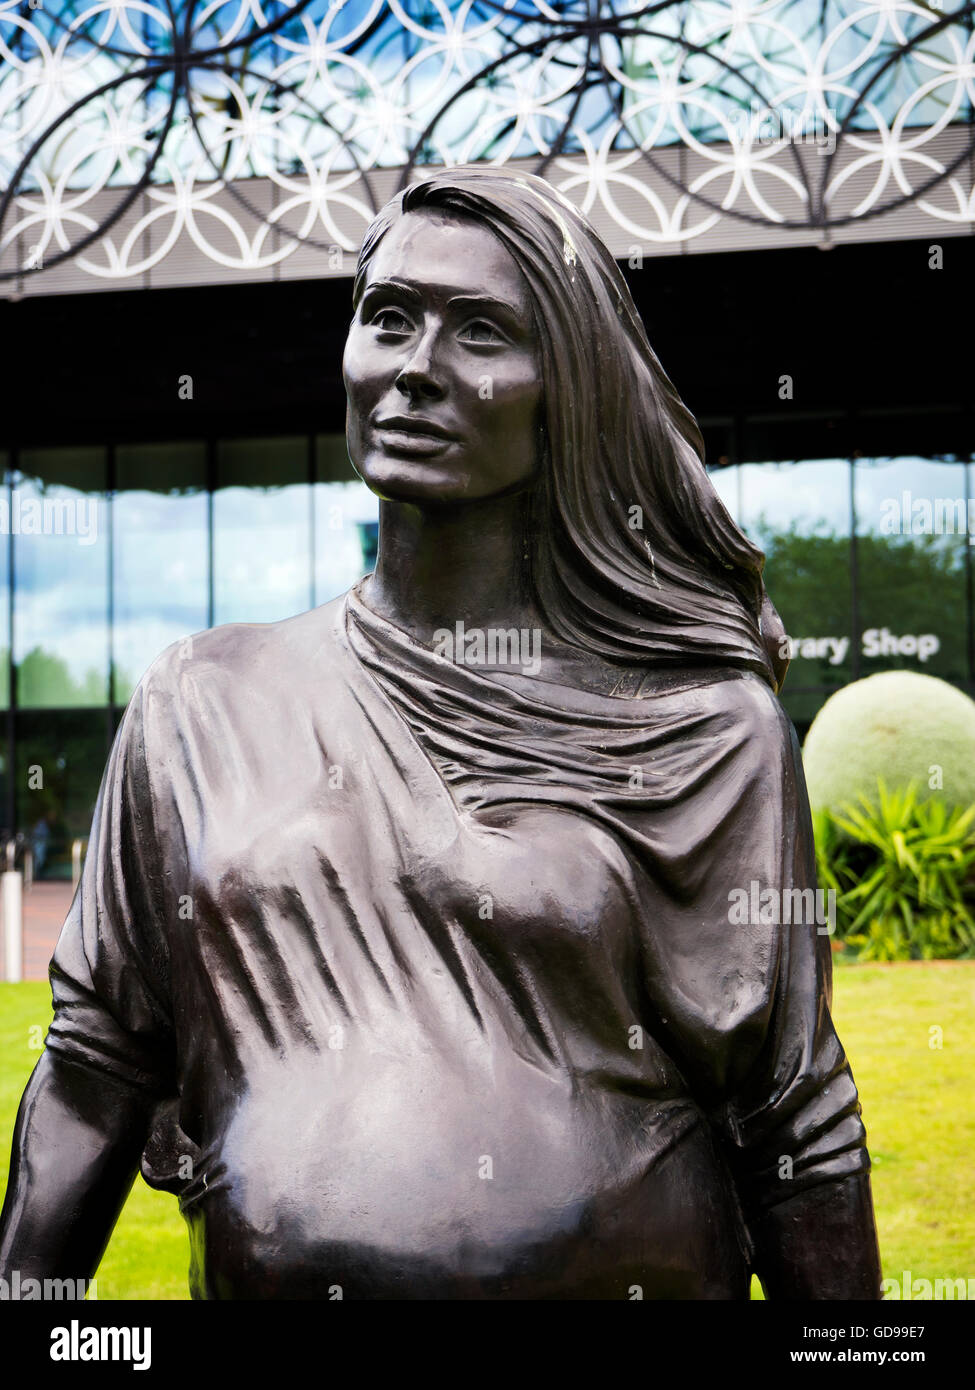 Einer der Statuen in einer echten Birmingham Familie Skulptur von Gillian tragen in Birmingham West Midlands England Centenary Square Stockfoto